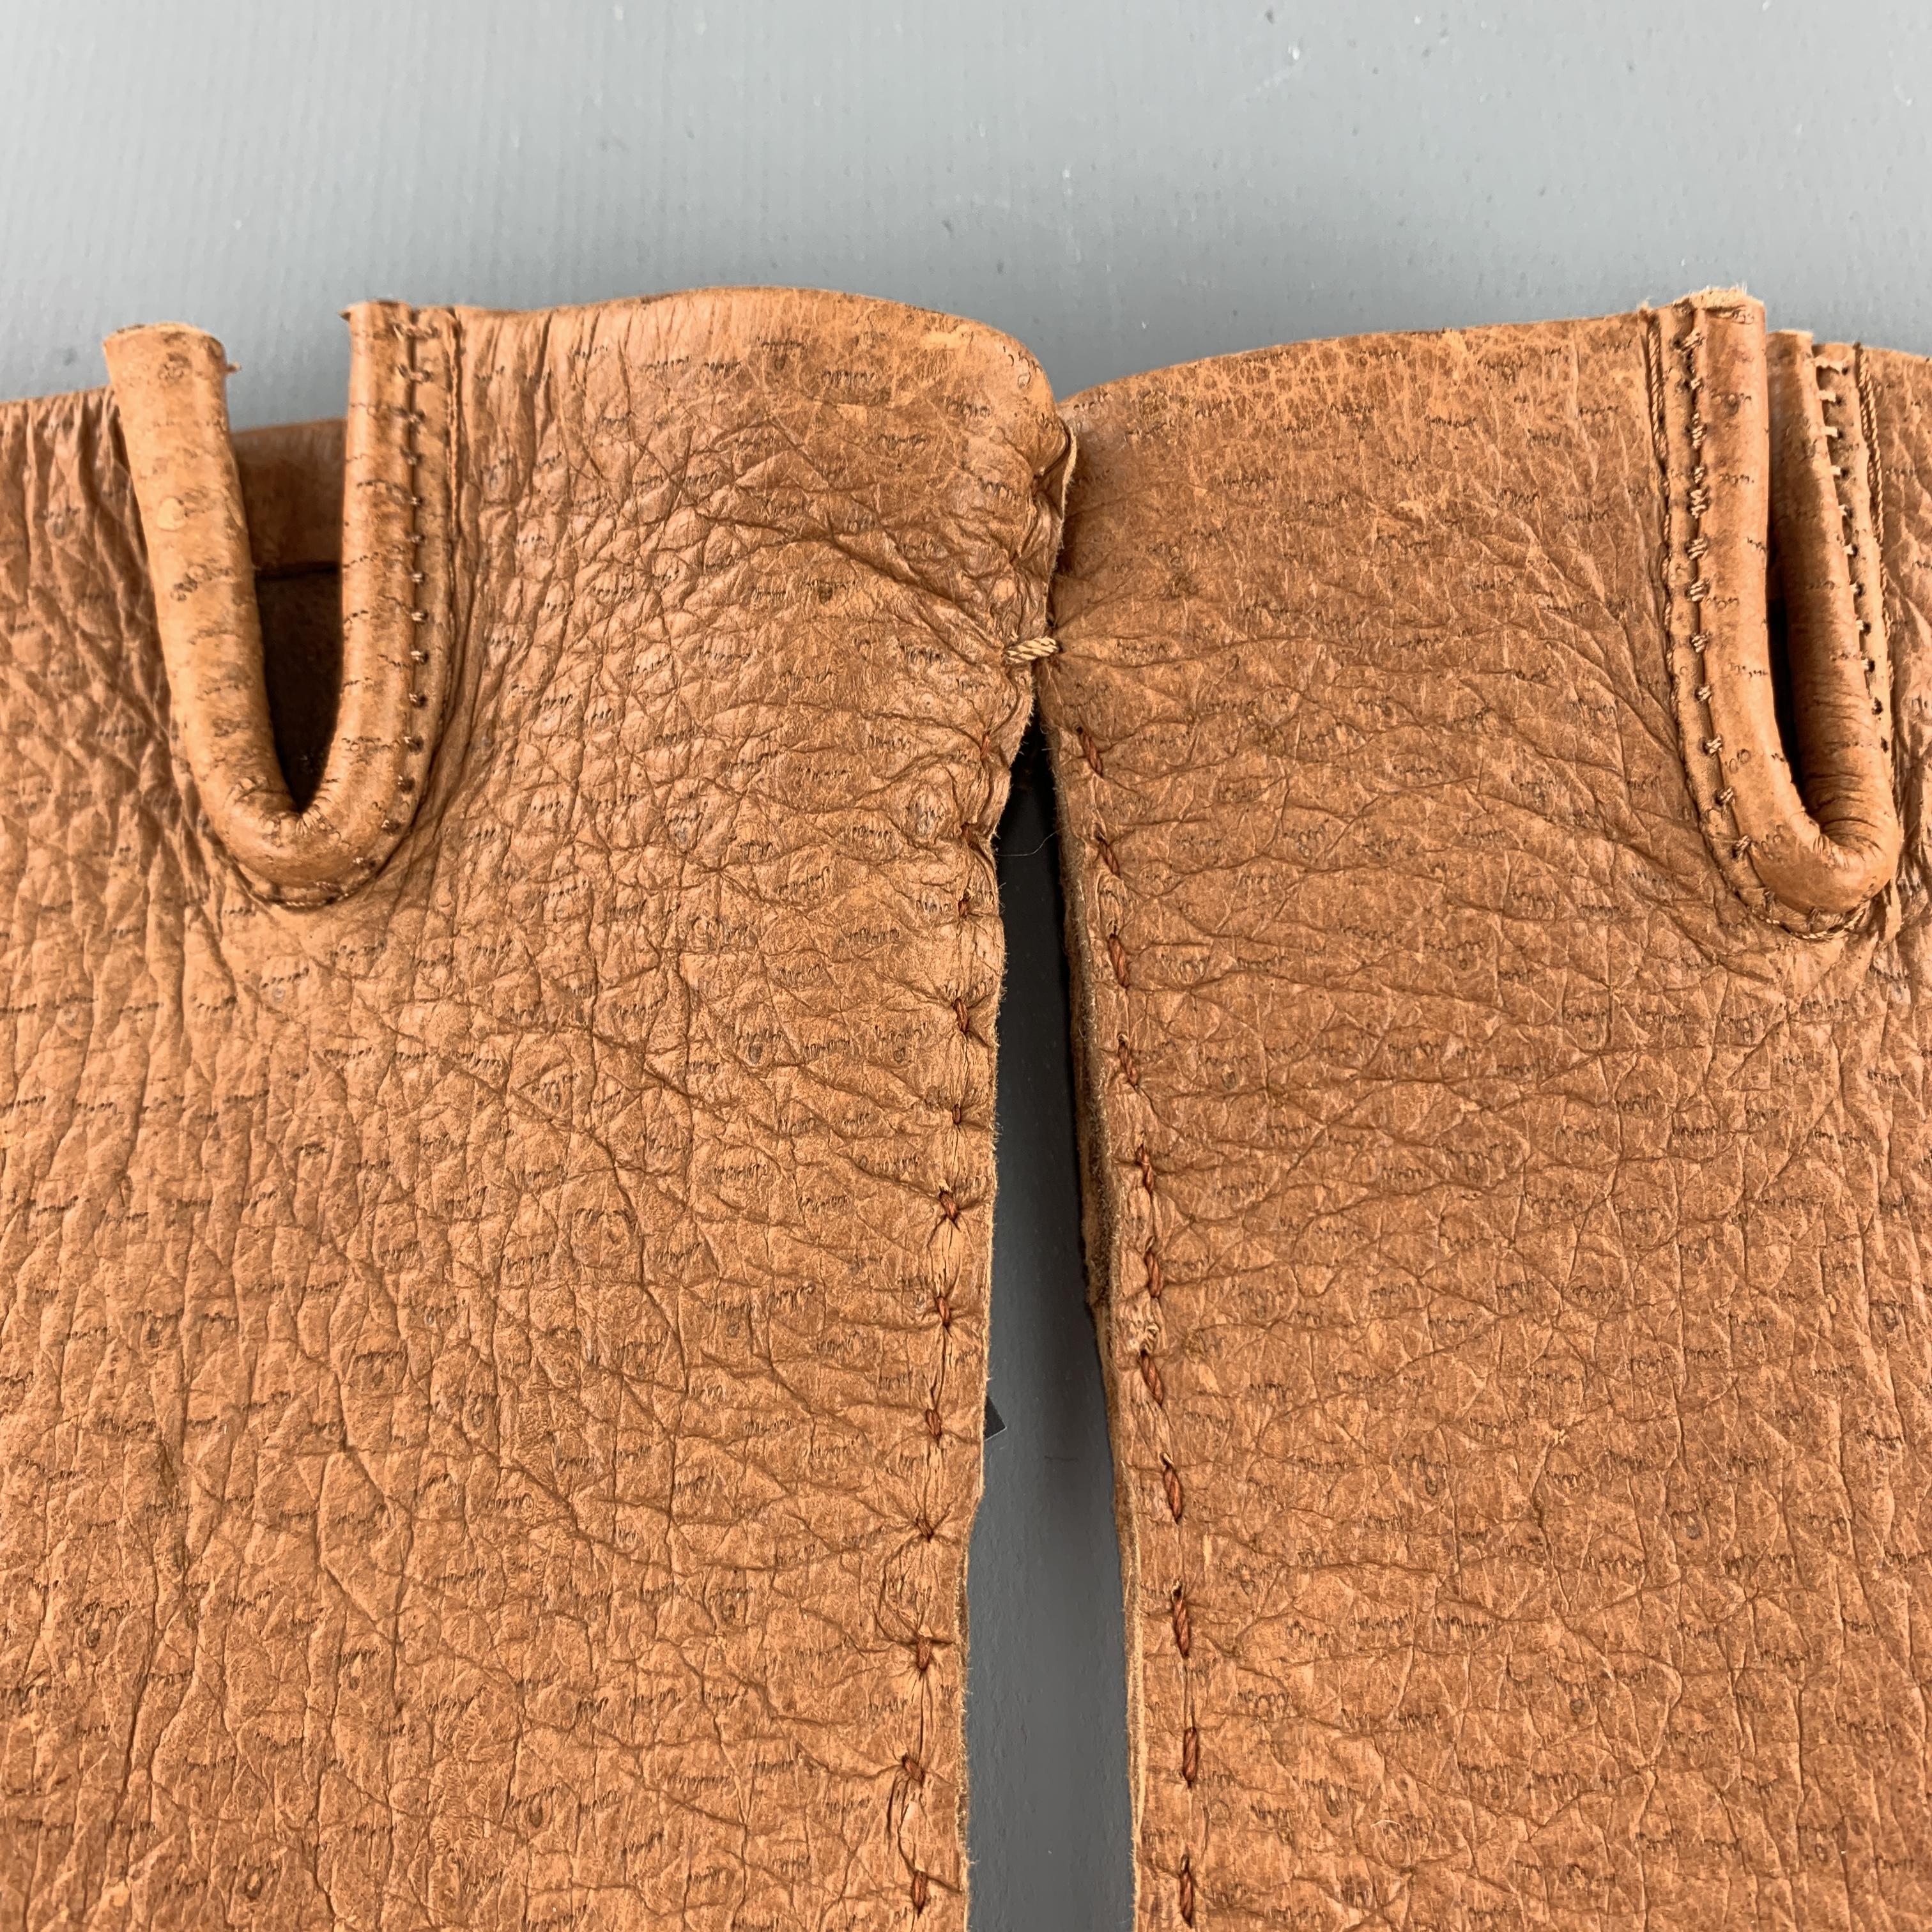 pigskin leather label gloves on sales